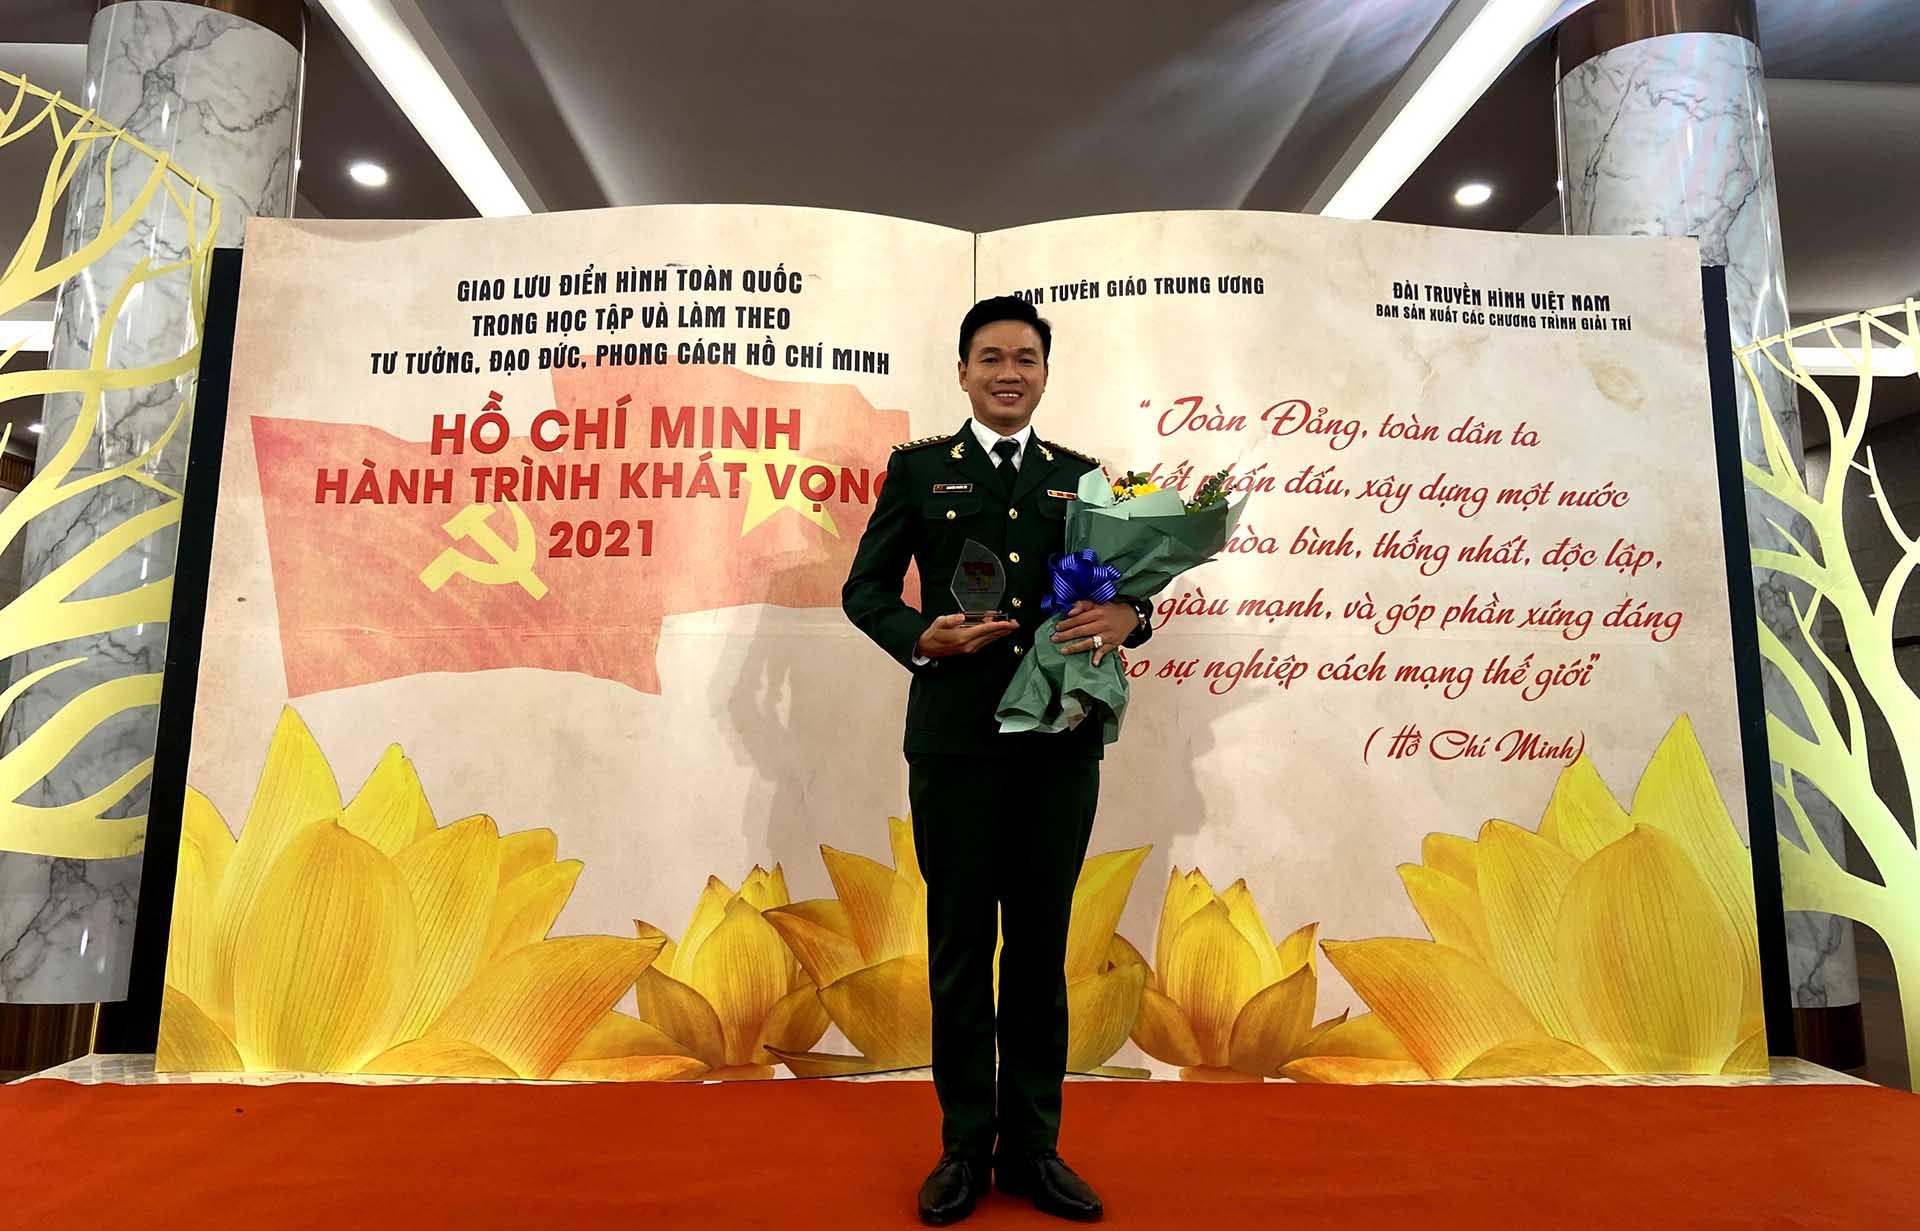 Đại úy Nguyễn Phước Tới vinh dự là đại diện duy nhất của tỉnh An Giang tham gia chương trình Giao lưu “Hồ Chí Minh-Hành trình khát vọng” vào tối 5/12/2021 do Ban Tuyên giáo Trung ương tổ chức.